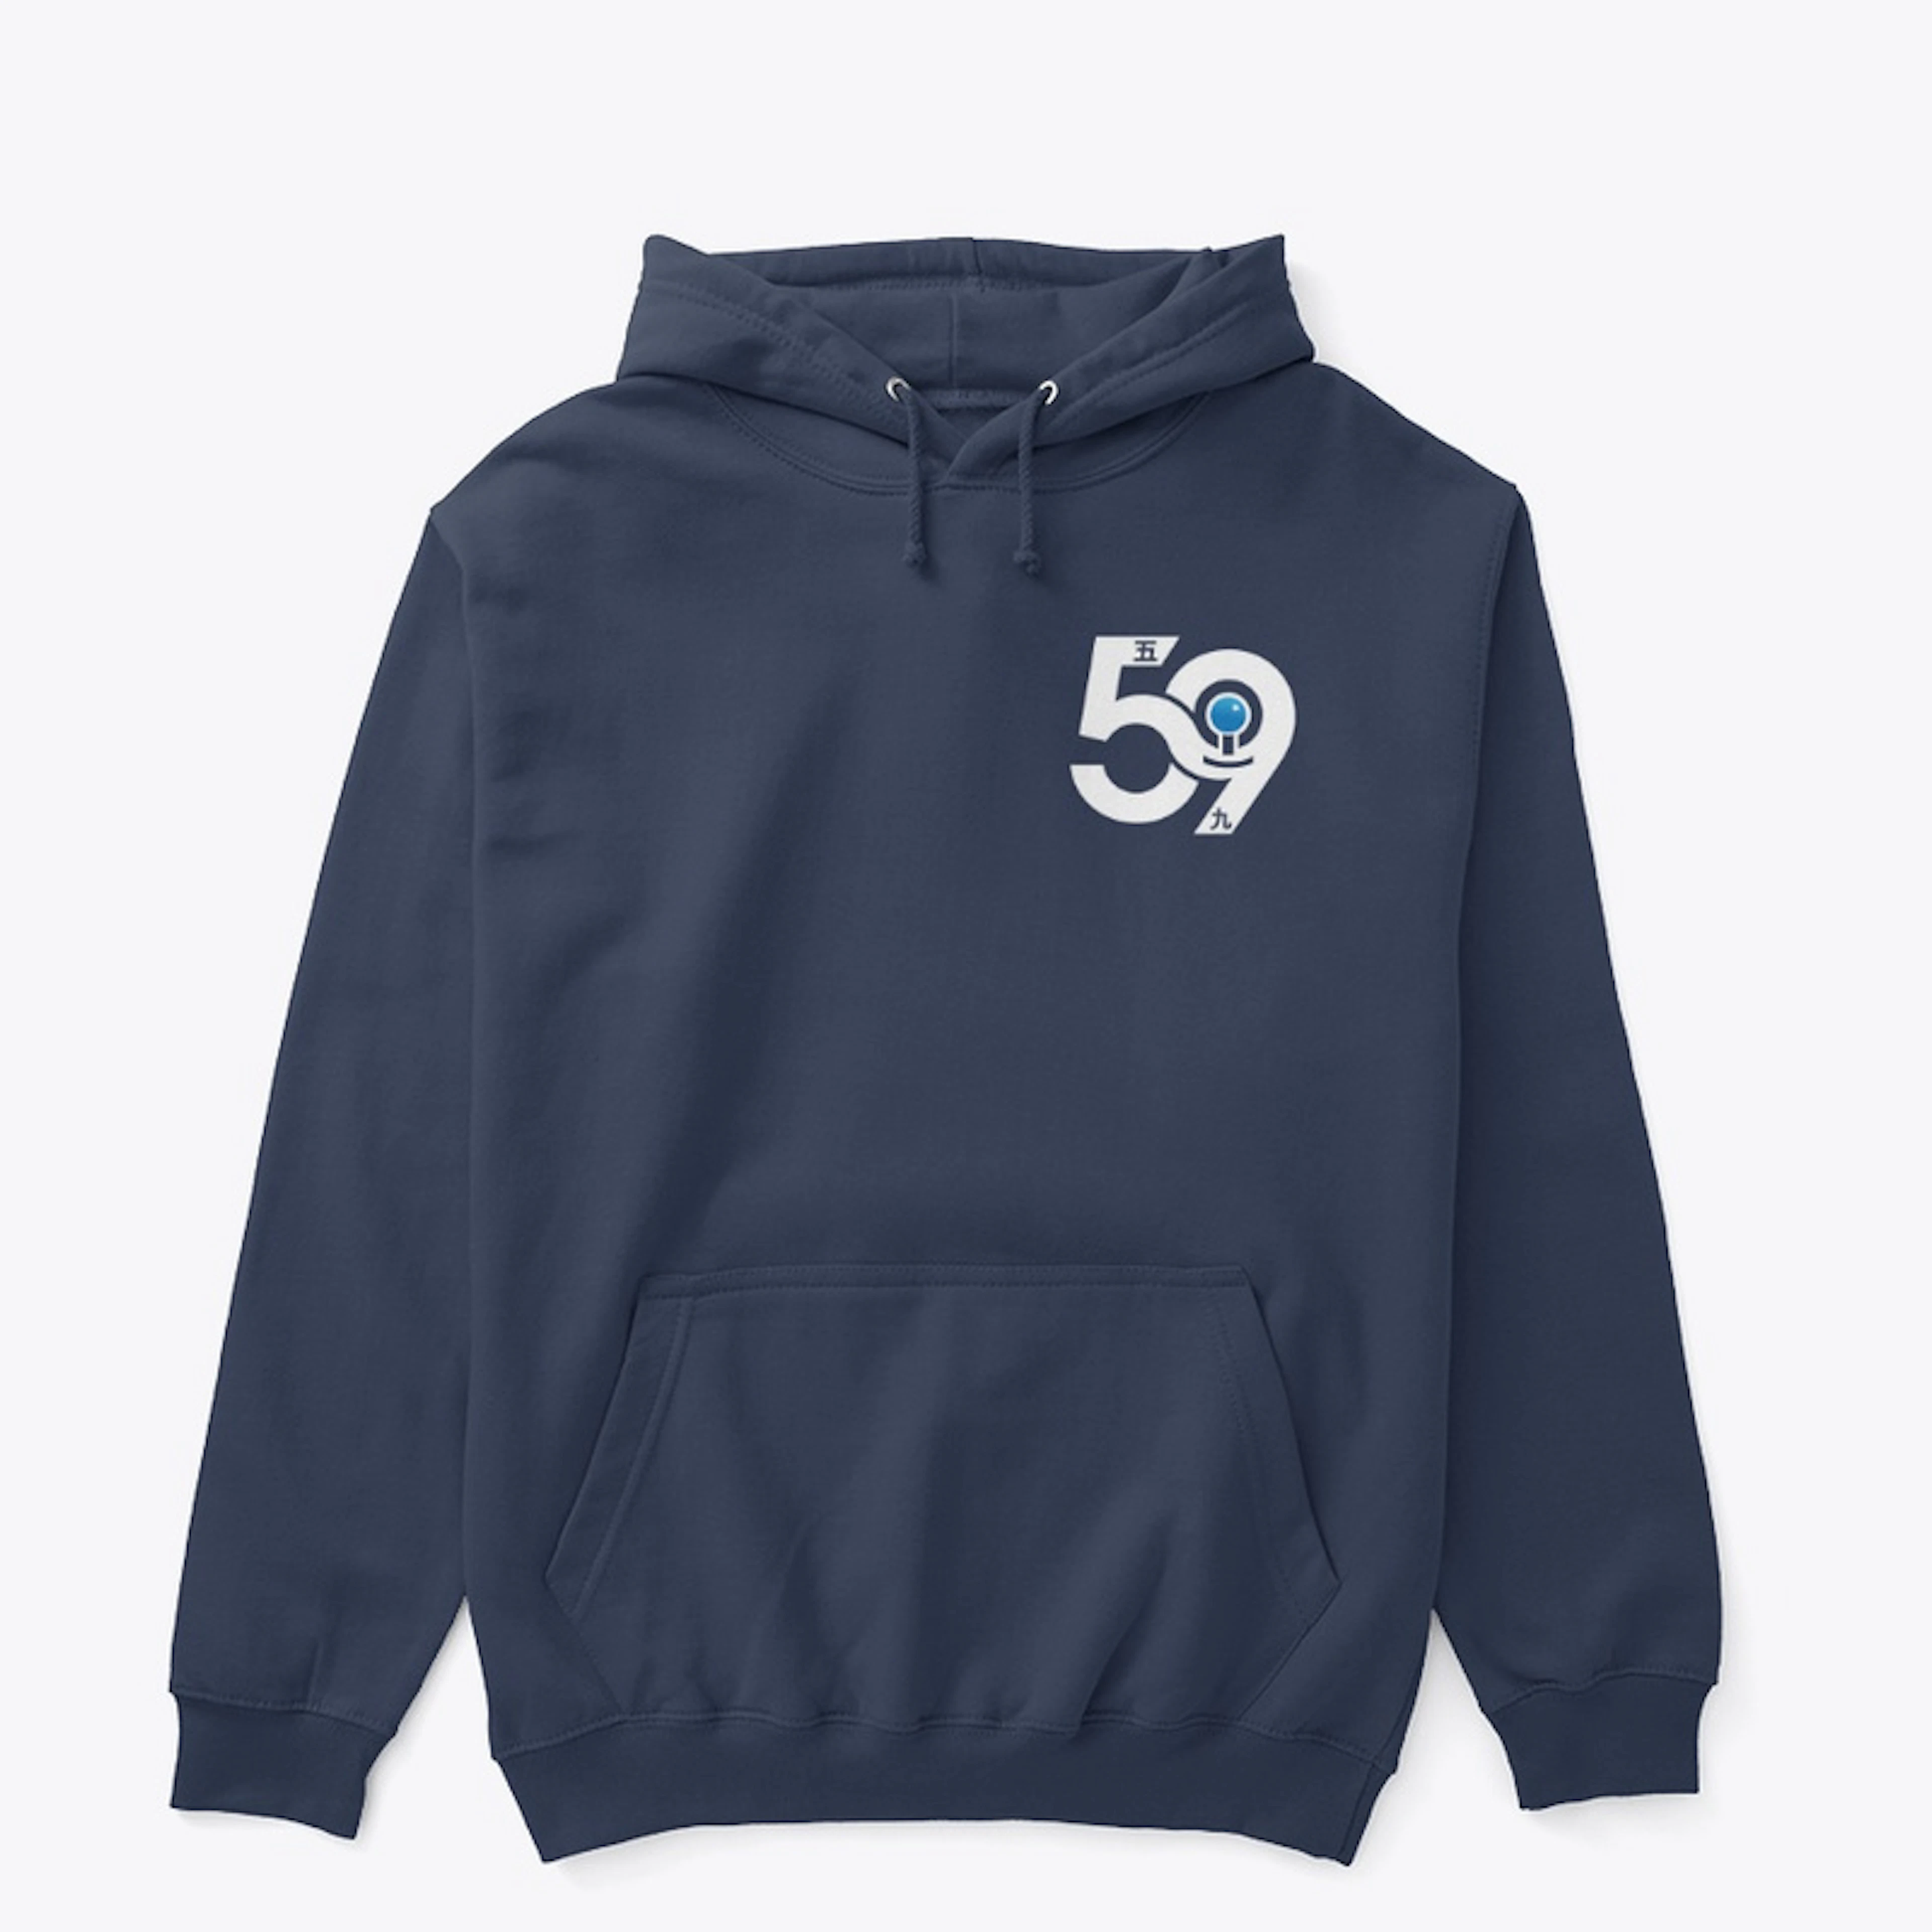 59 Gaming Logo Design